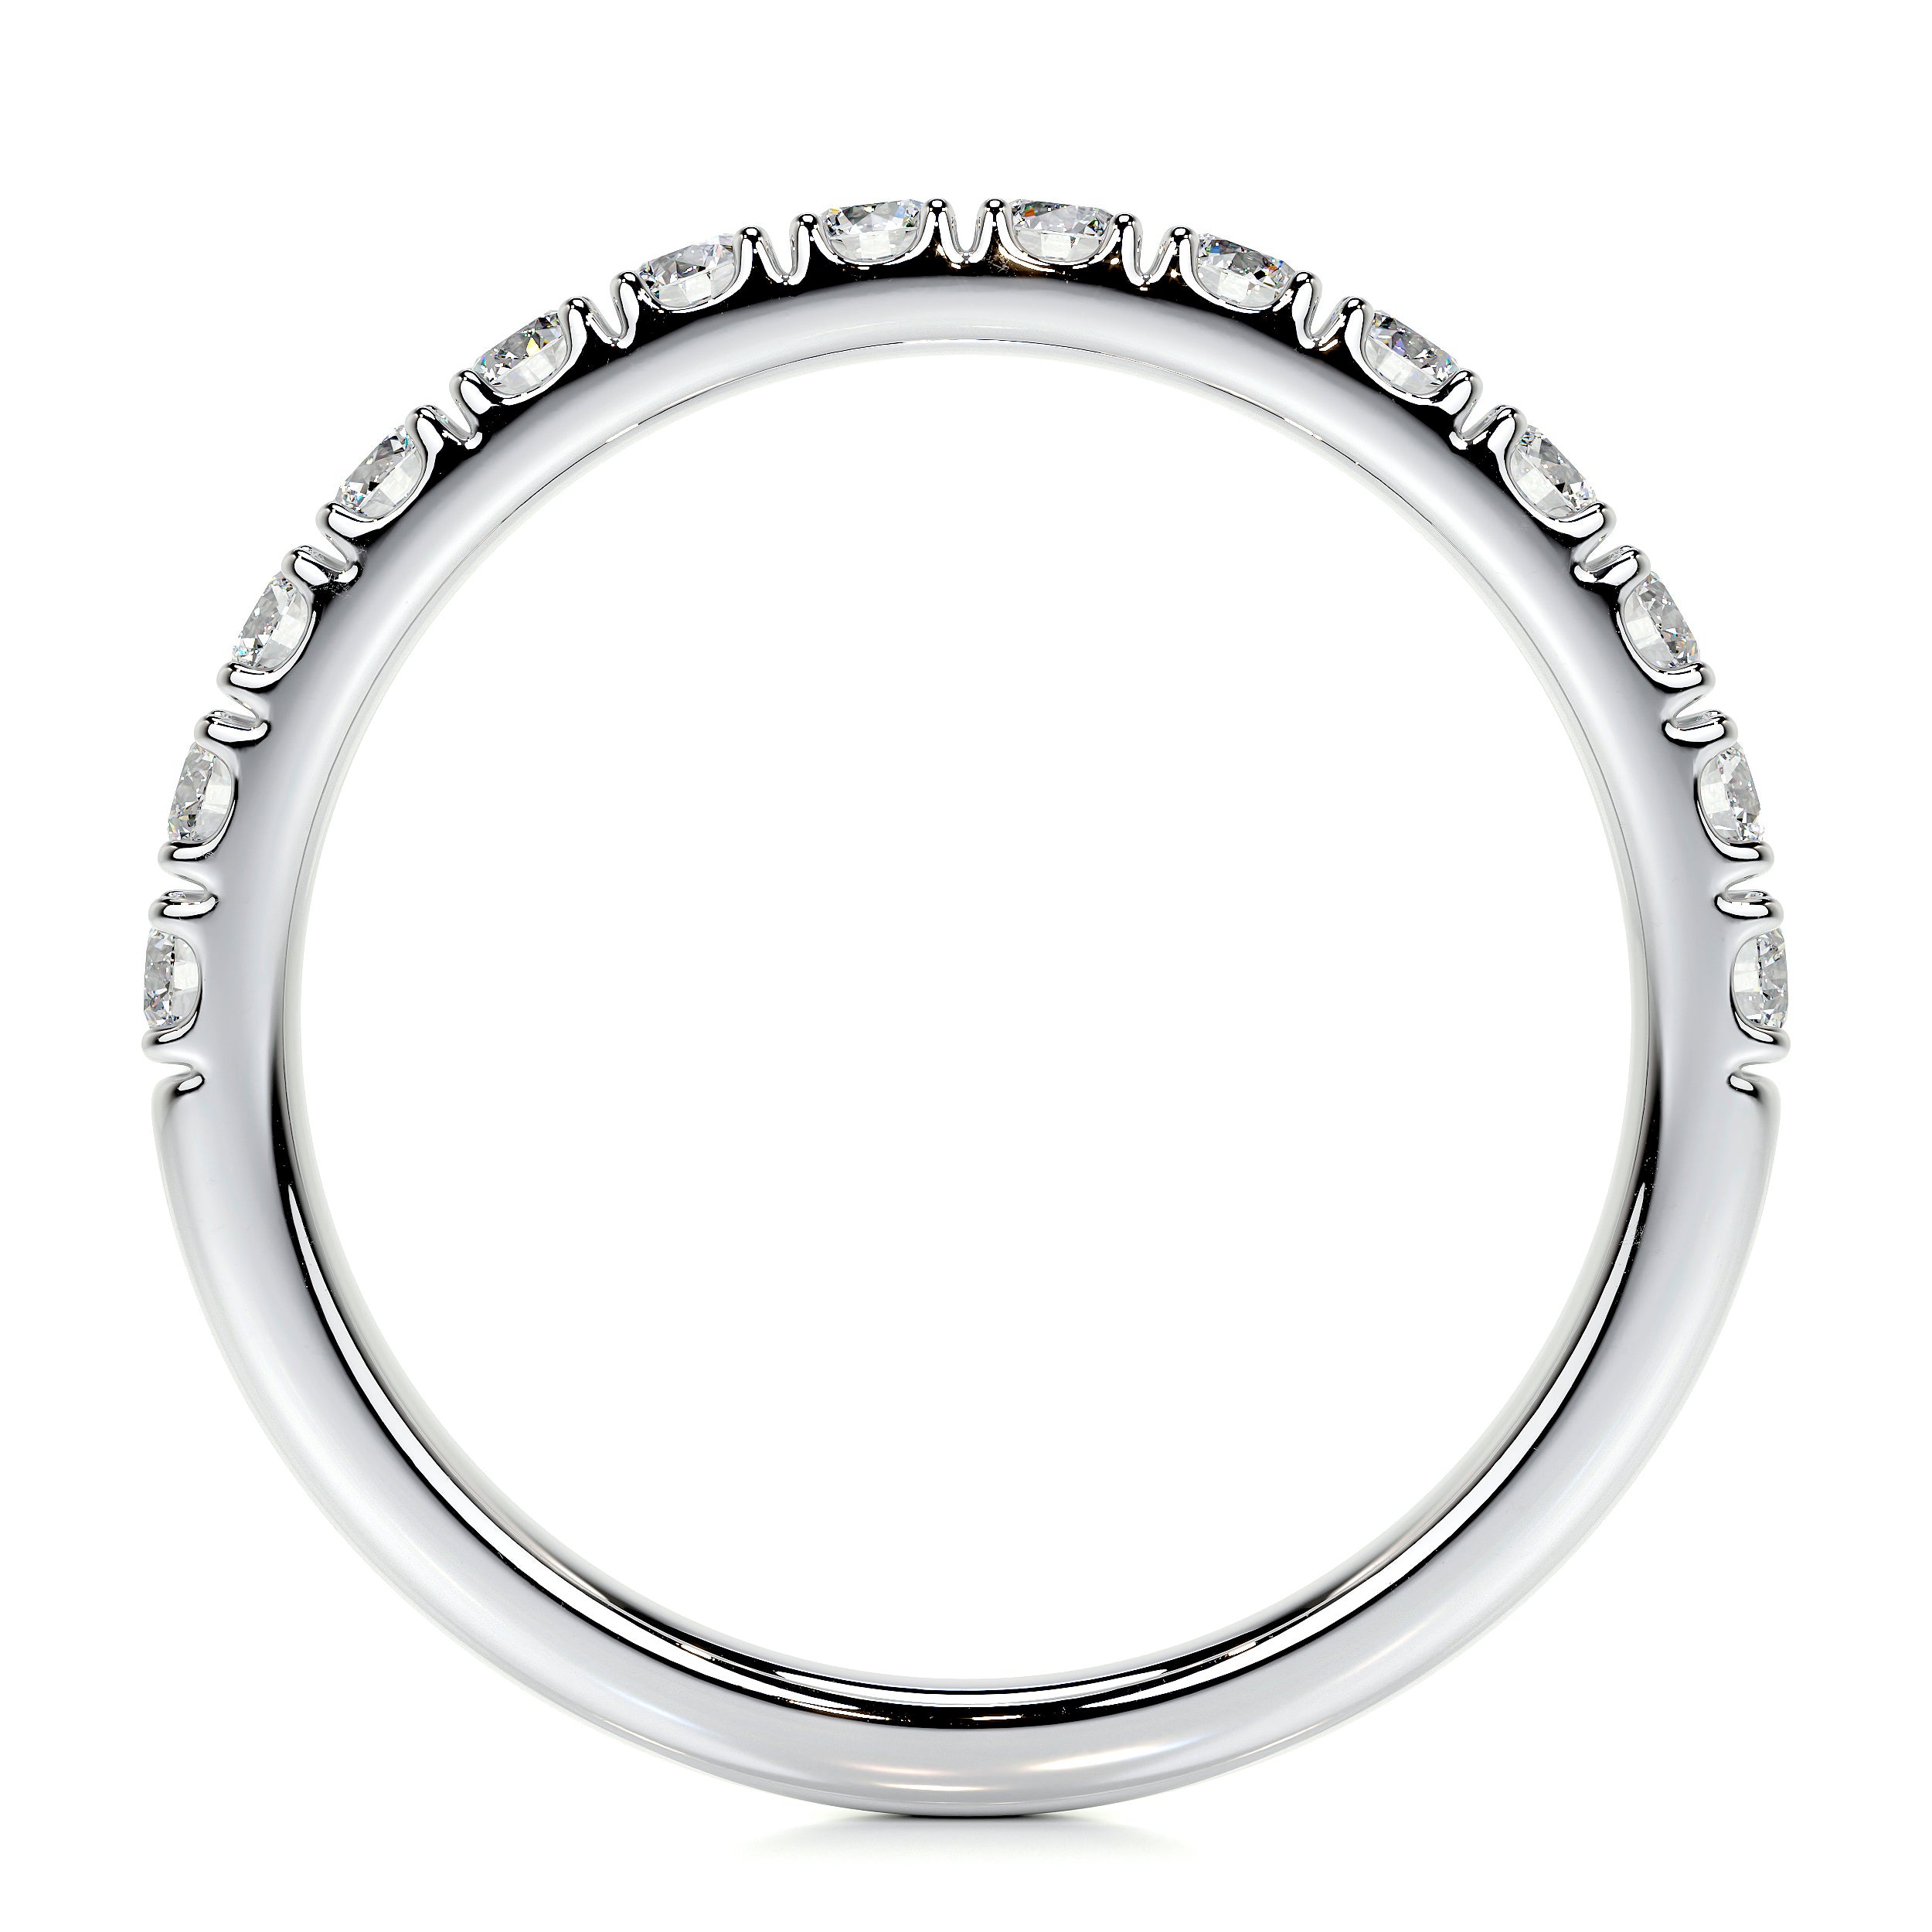 Blair Lab Grown Diamond Wedding Ring   (0.5 Carat) -18K White Gold